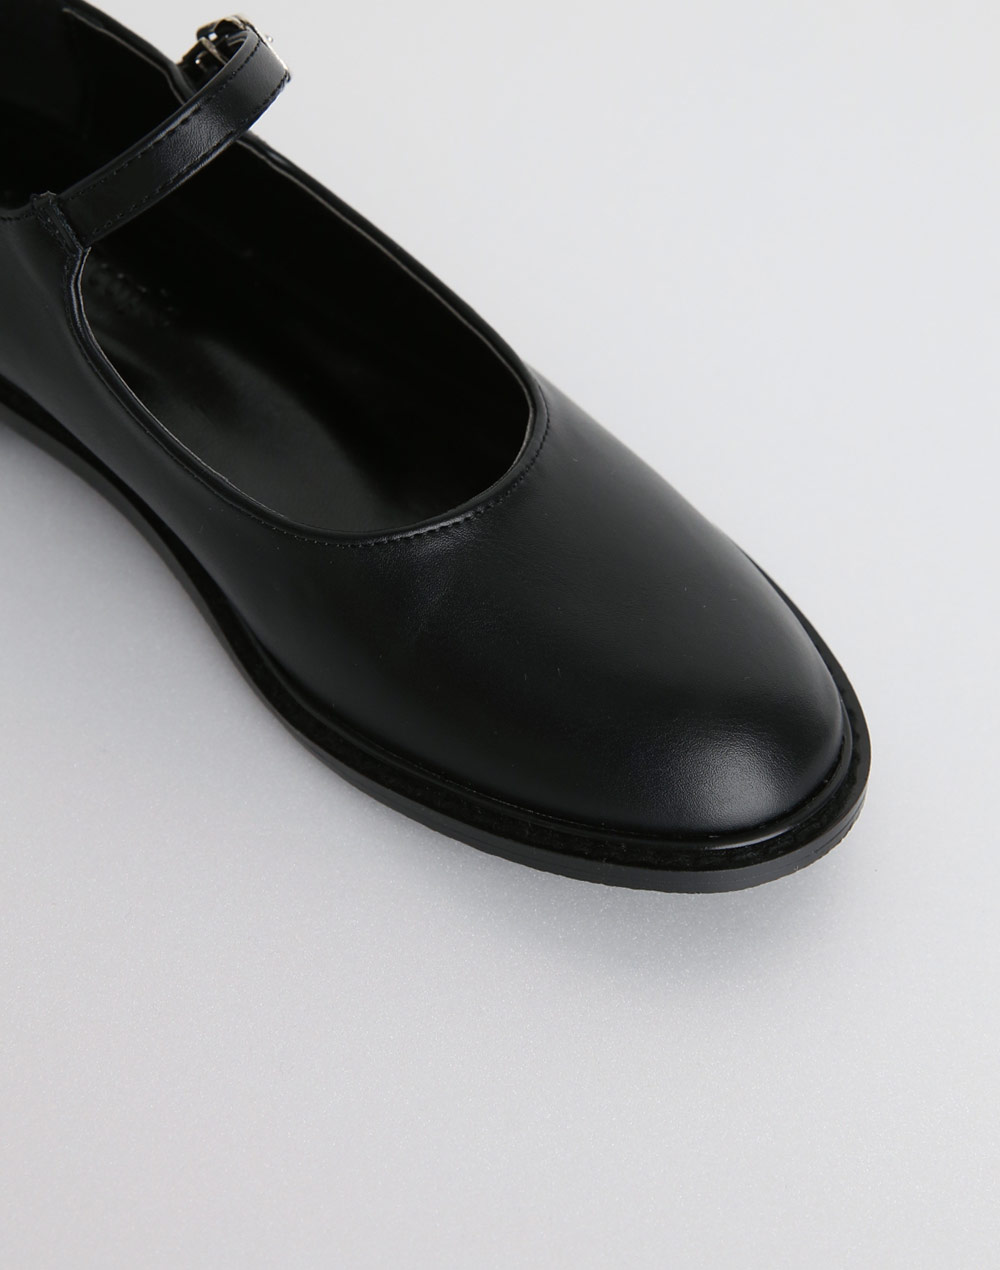 2type mary jane shoes・s279352（シューズ/フラット）| chipichan.1215 | 東京ガールズマーケット